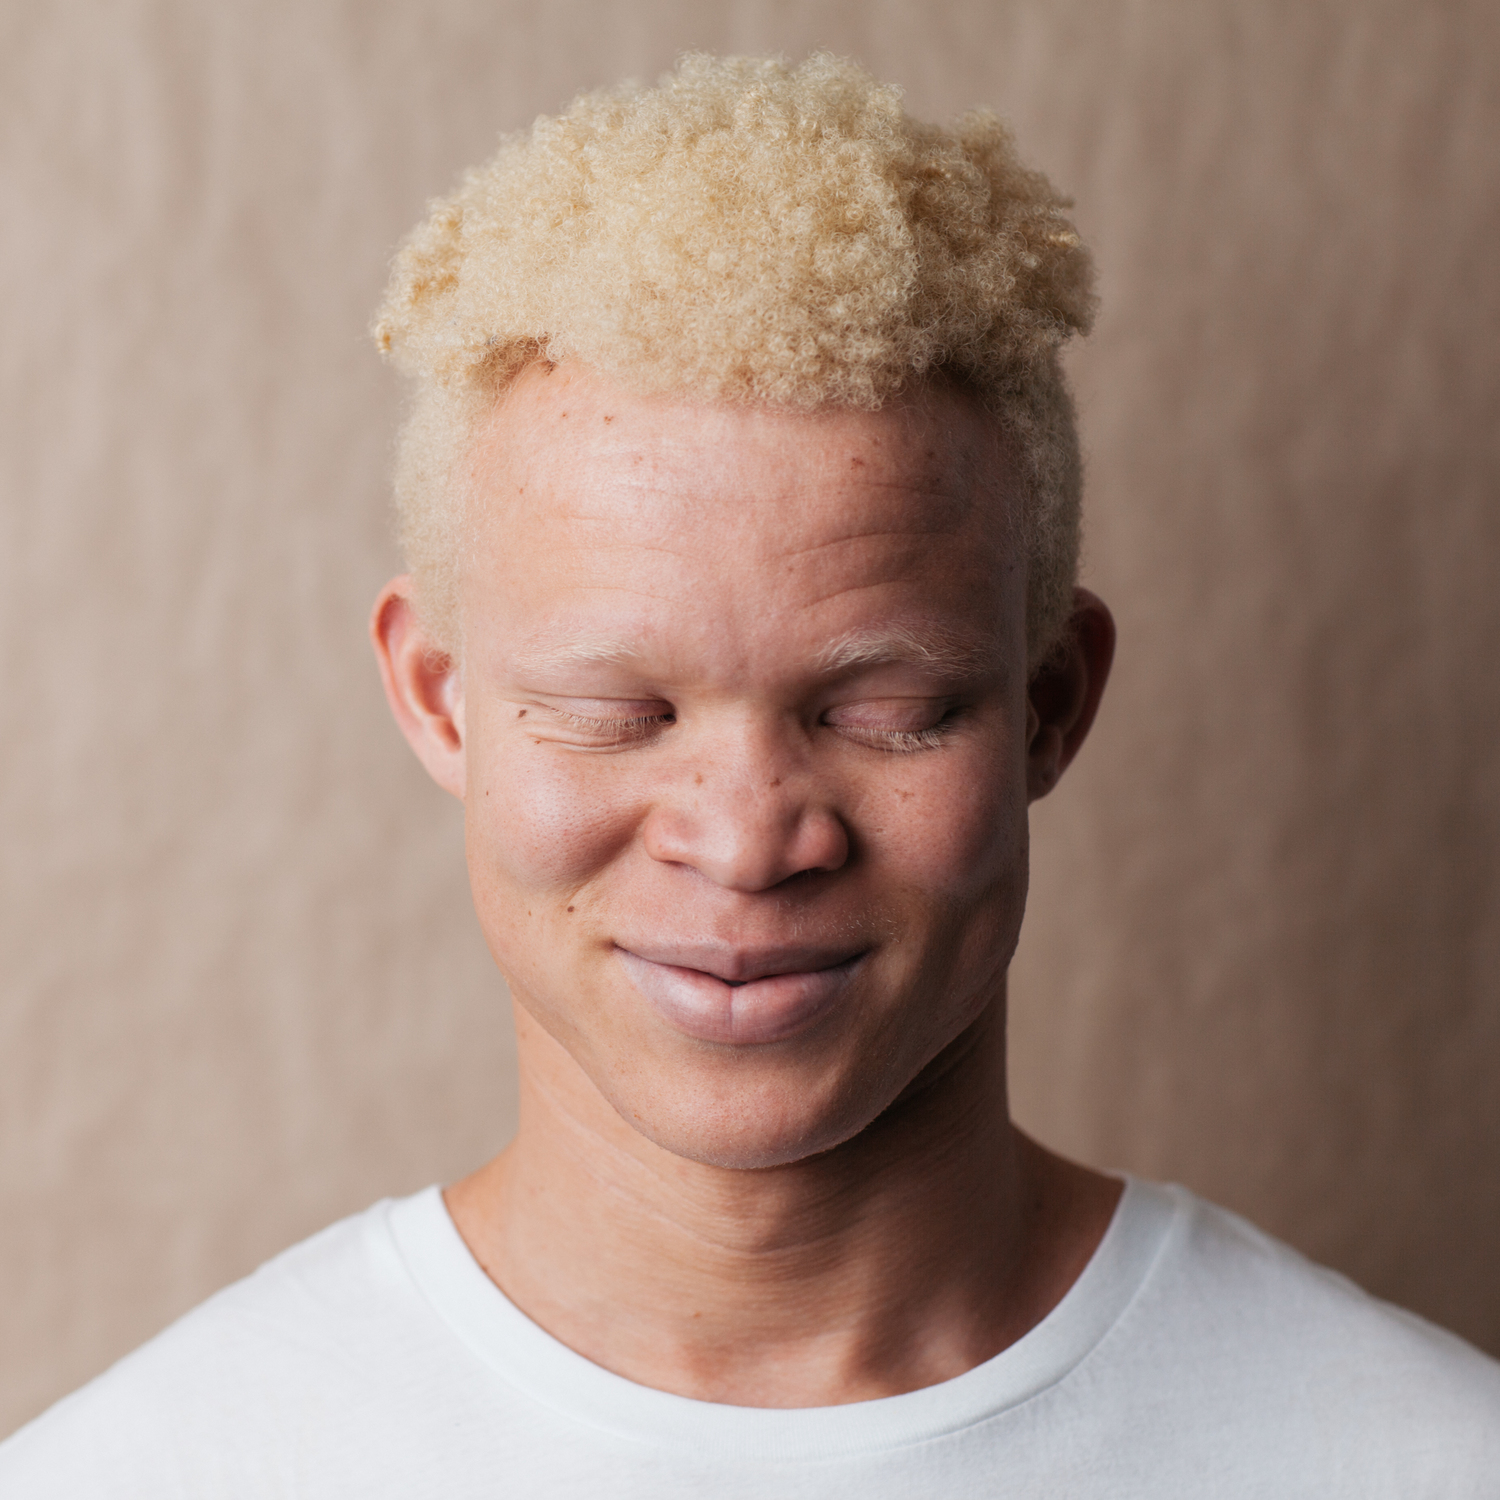 Белый негр. Альбиносы люди негроиды. Альбинос негроидной расы. Афроамериканец альбинос.